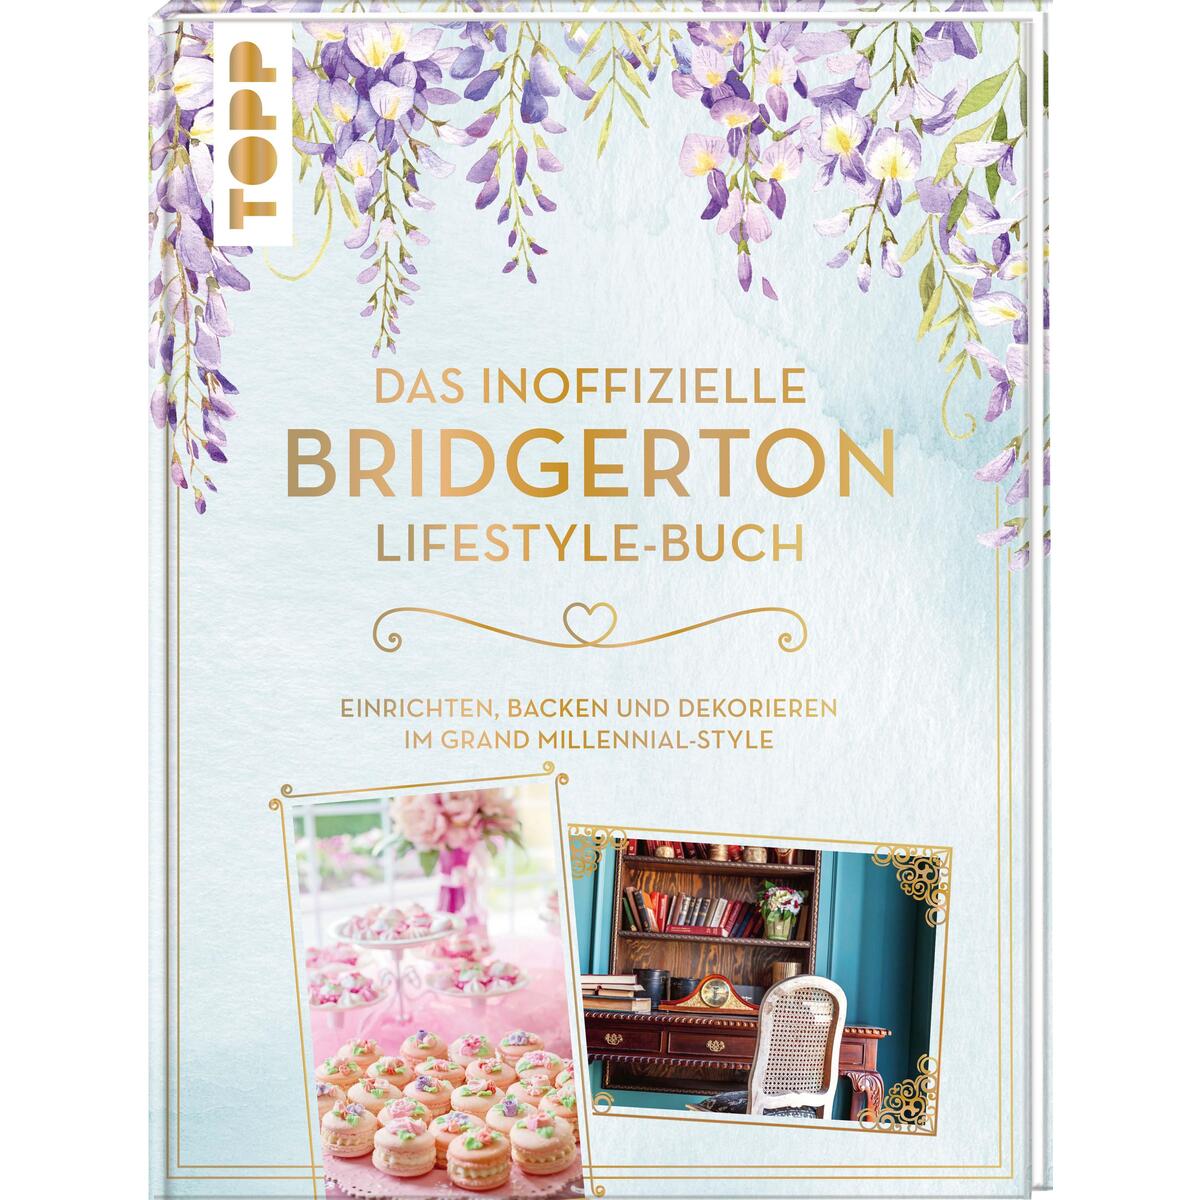 Das inoffizielle Bridgerton Lifestyle-Buch von Frech Verlag GmbH